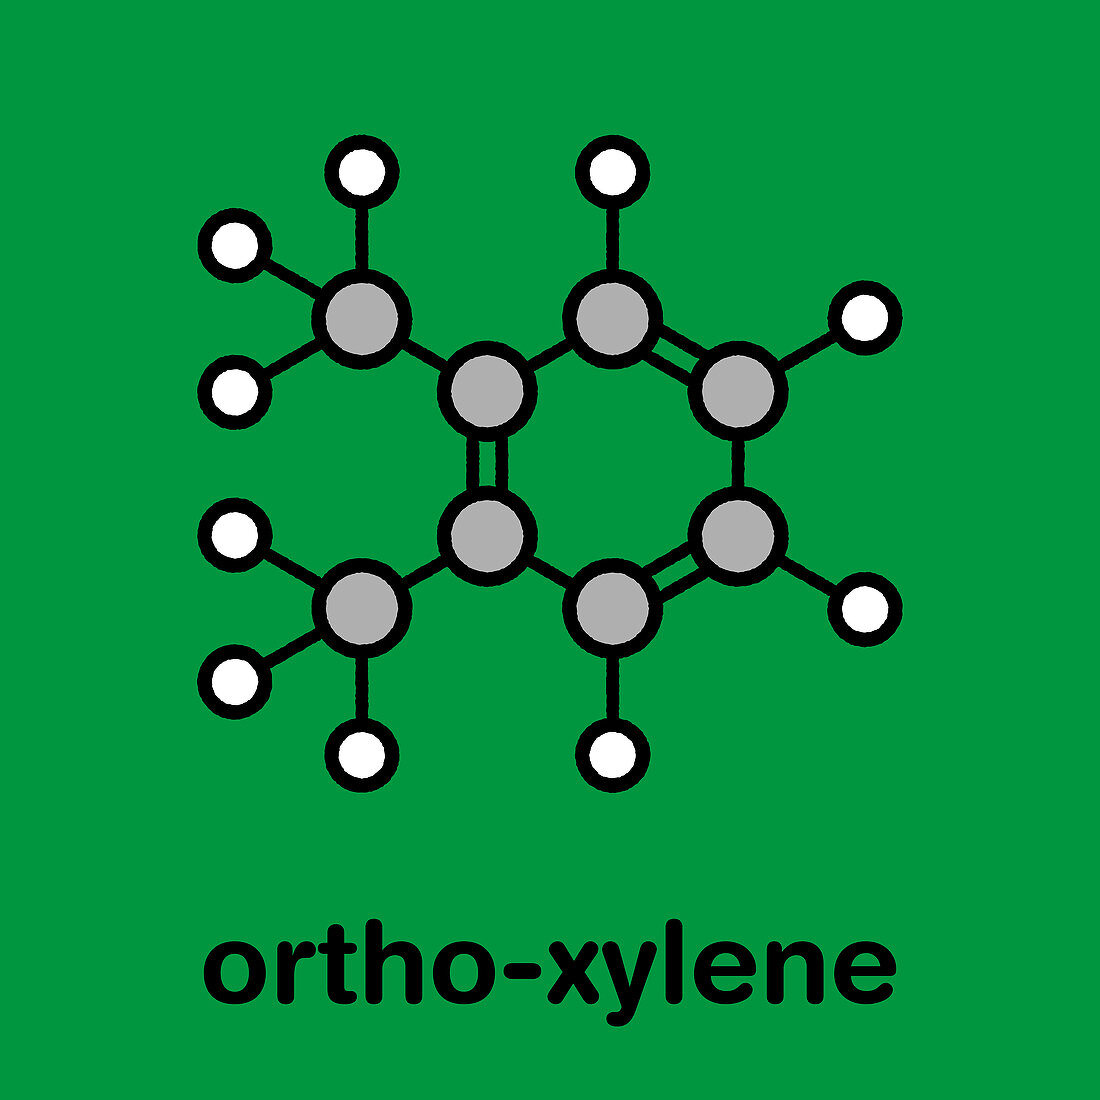 Ortho-xylene aromatic hydrocarbon molecule, illustration